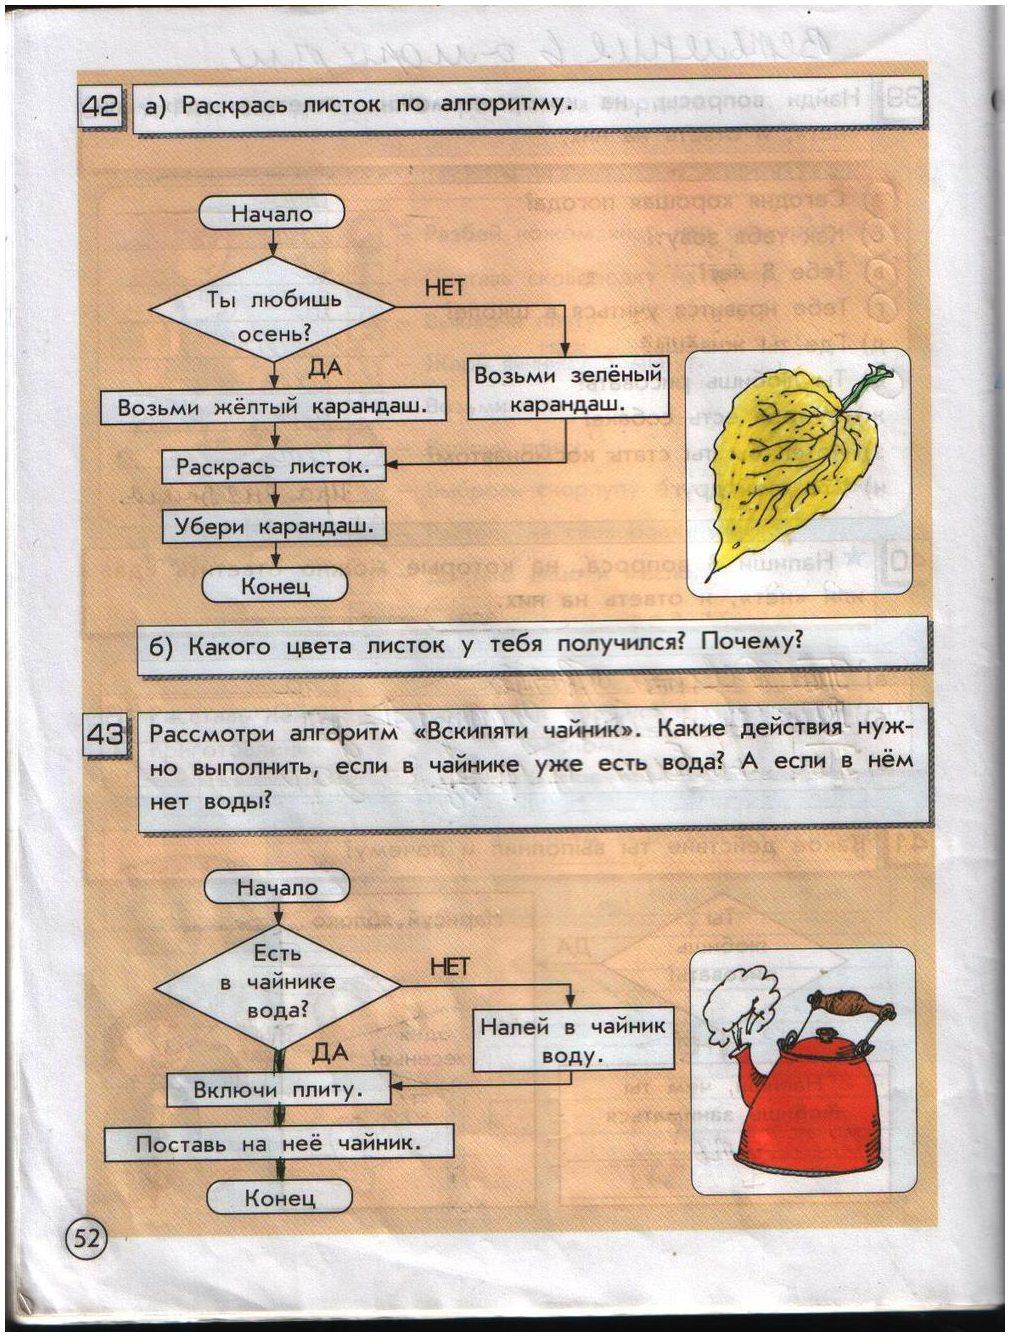 ГДЗ Информатика 2 класс часть 1 страница 52 Горячев, Горина